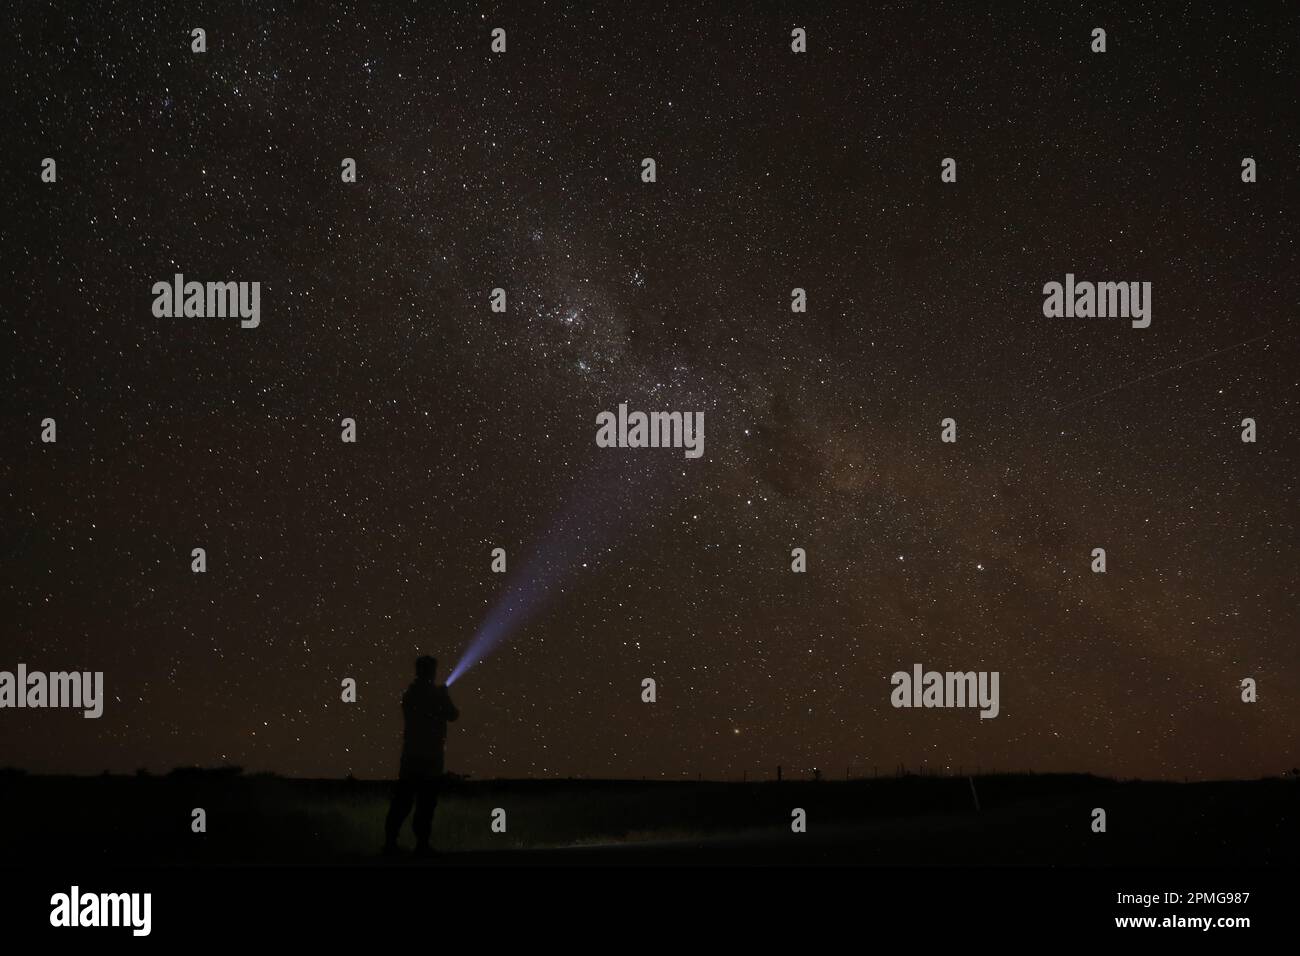 Una figura maschile è illuminata contro il cielo notturno, la sua silhouette raggiunge le stelle mentre afferra una sorgente luminosa luminosa in mano Foto Stock